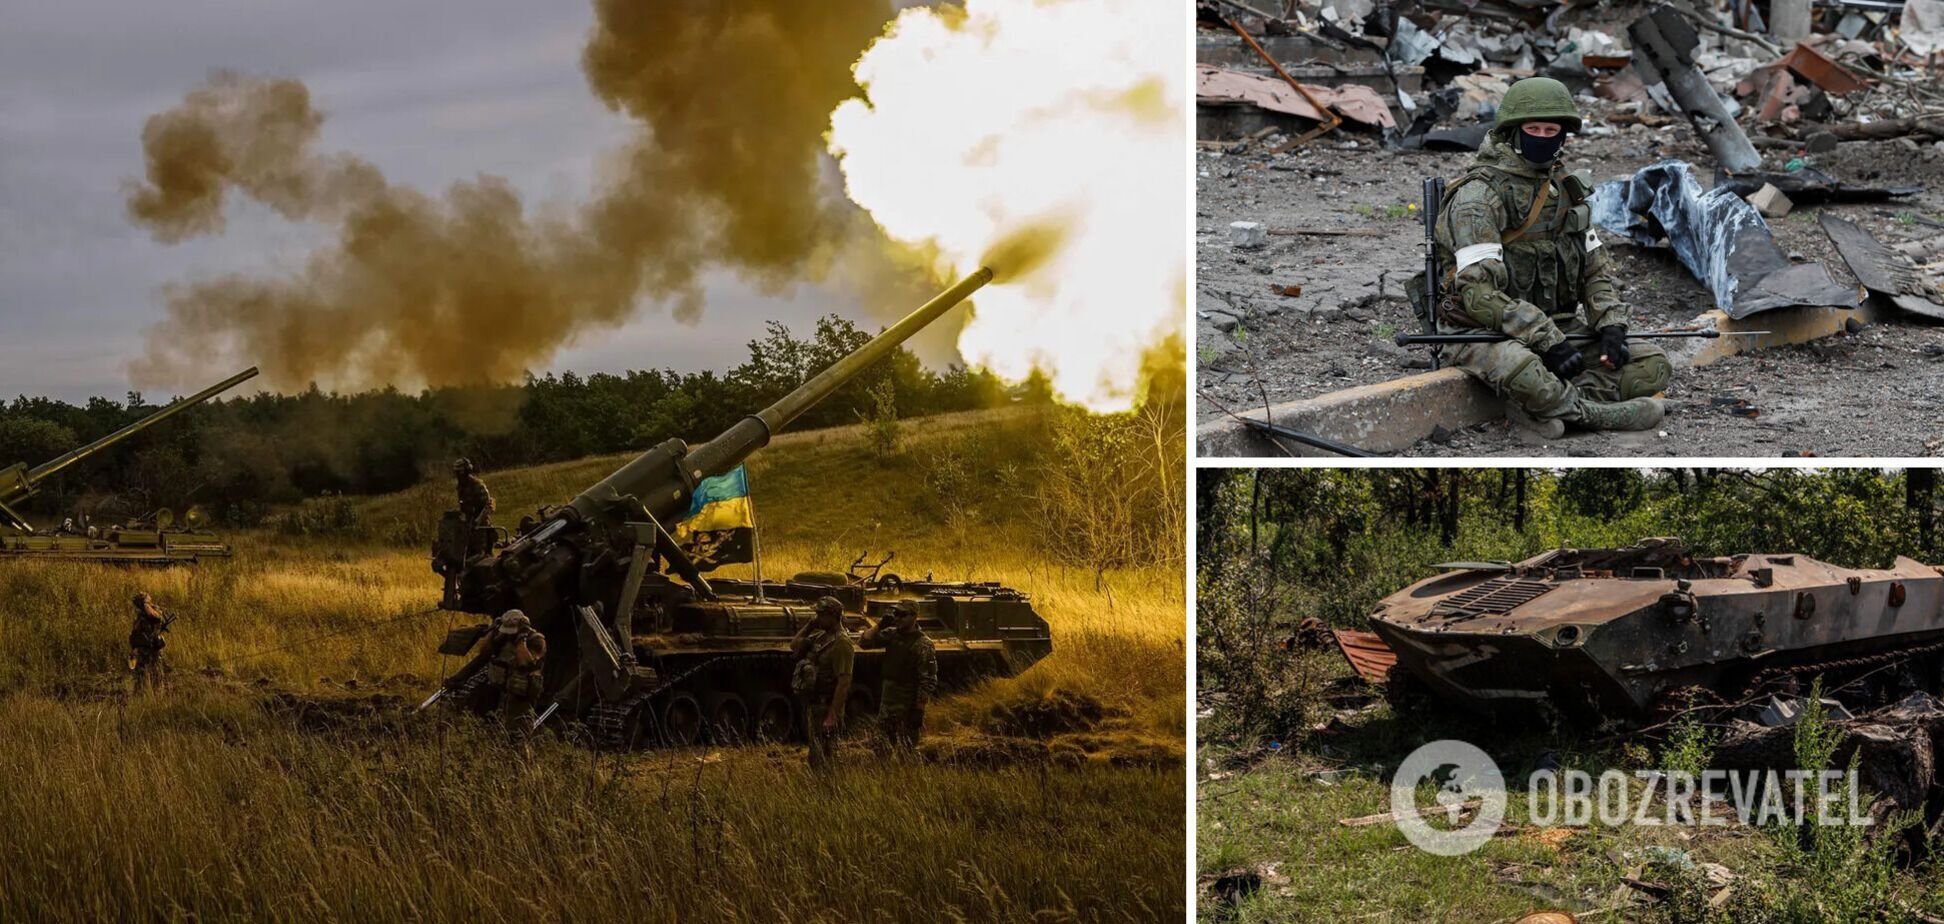 'Много убитых, раненых, каждый день по 20-30 человек': оккупант на Донецком направлении пожаловался на большие потери. Аудио